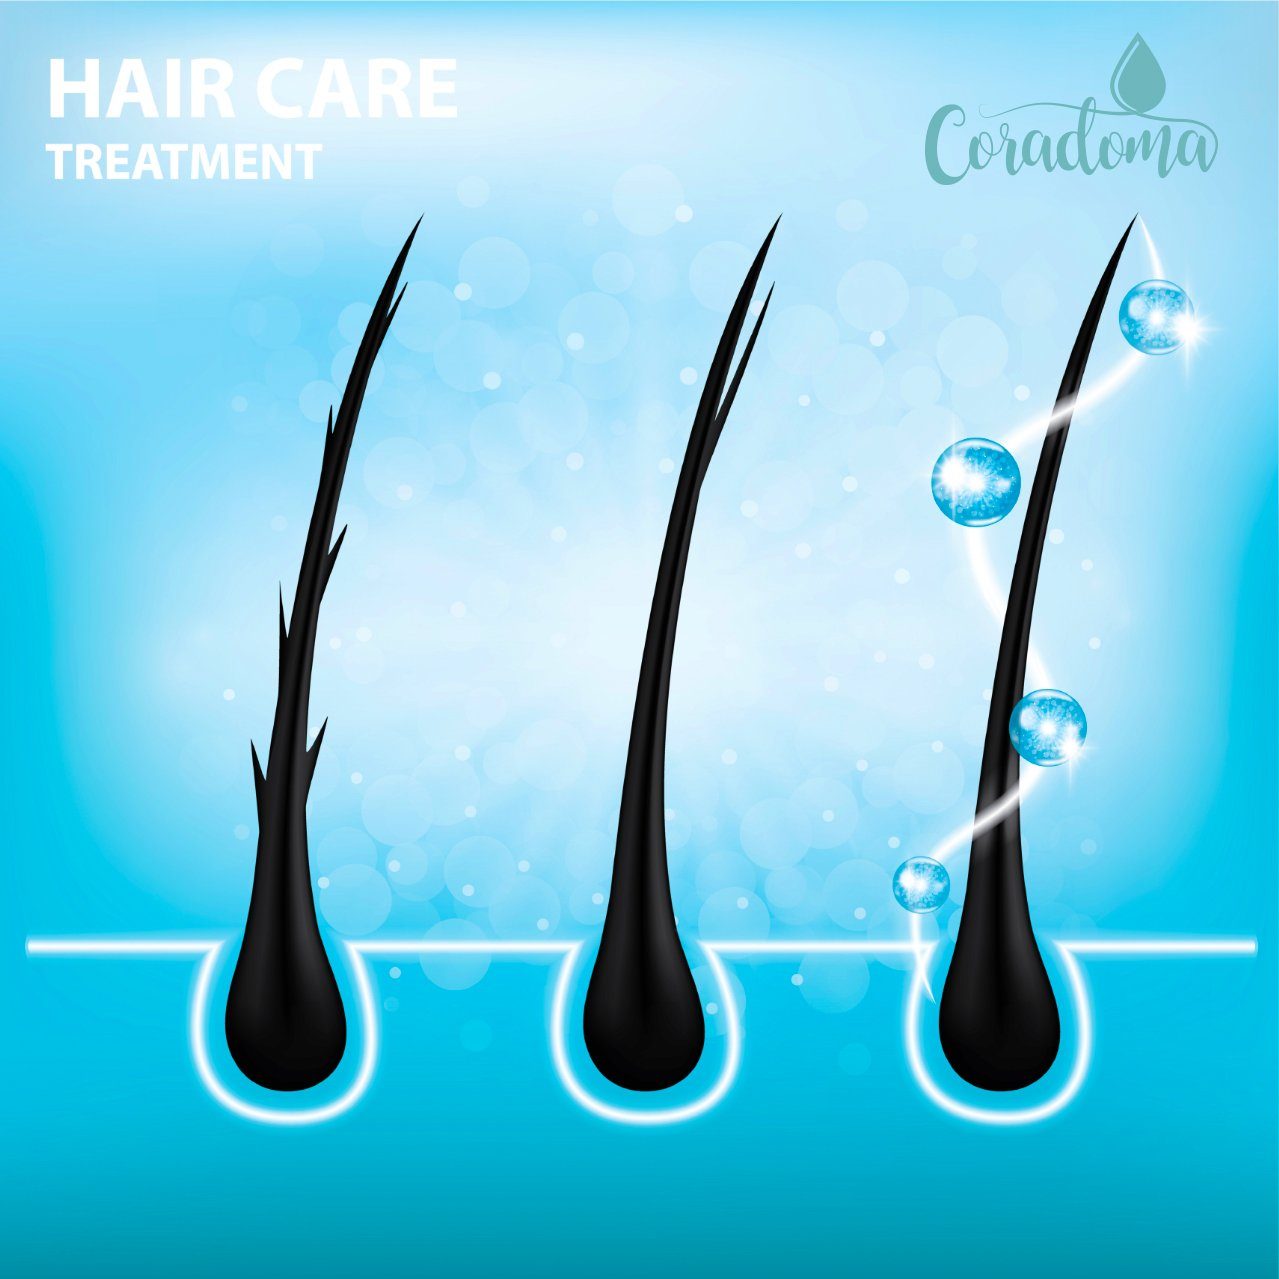 und Coradoma Haarausfall Männer, Haarserum Serum 50ml Frauen Blaues für Haarwachstum Beschleunigen, Anti